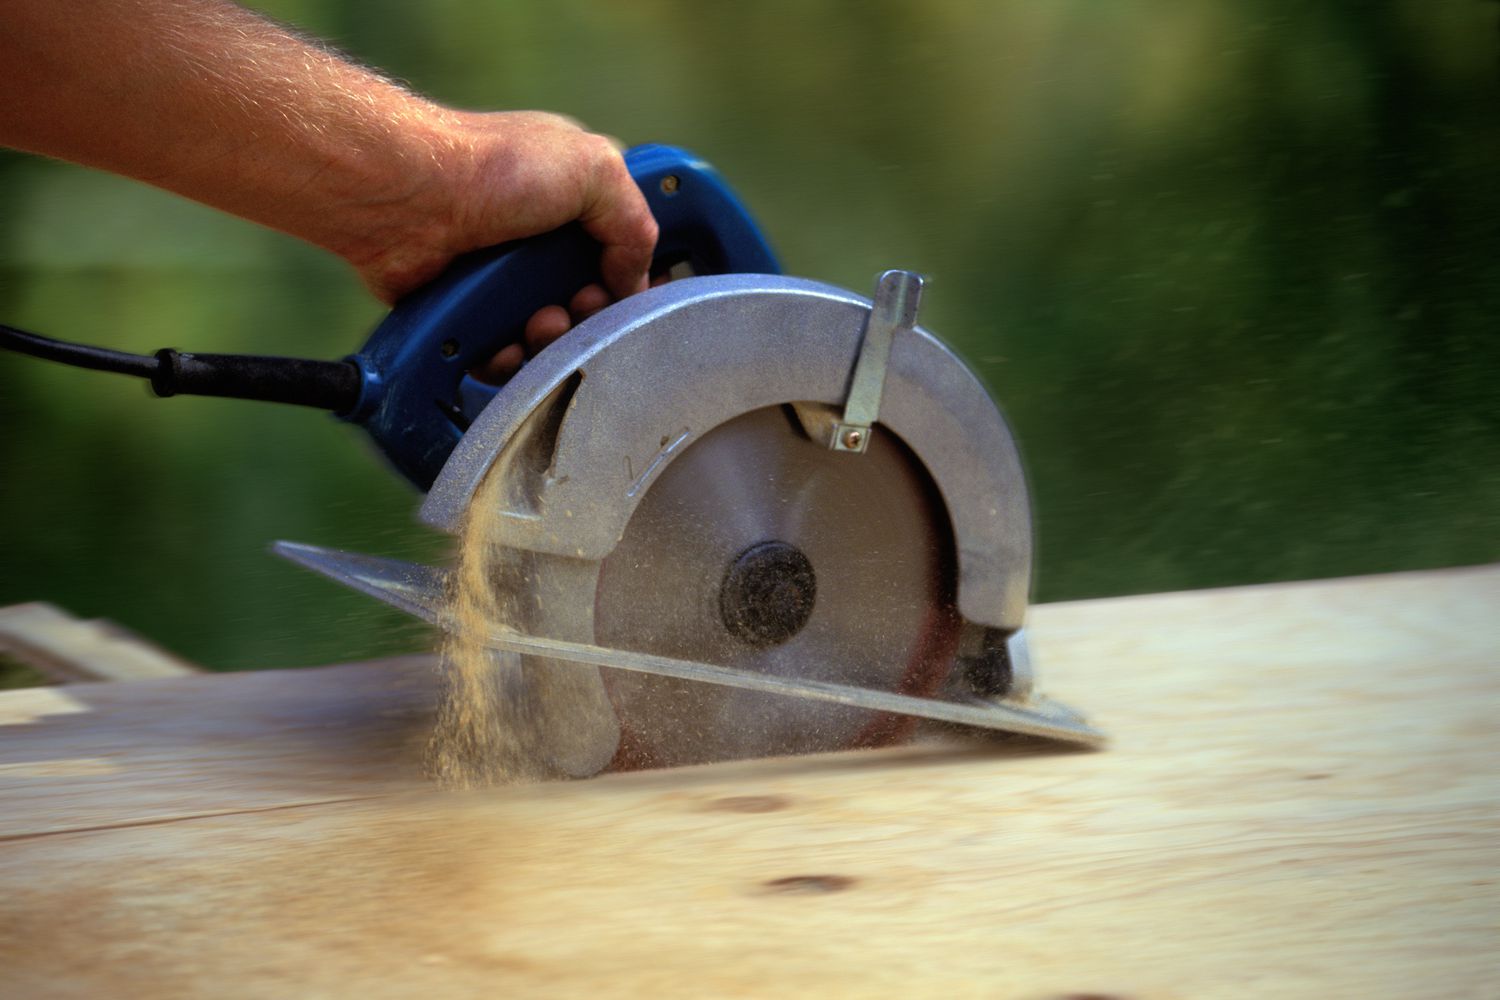 Mann schneidet Holz mit Kreissäge, Fokus auf Säge (unscharfe Bewegung)